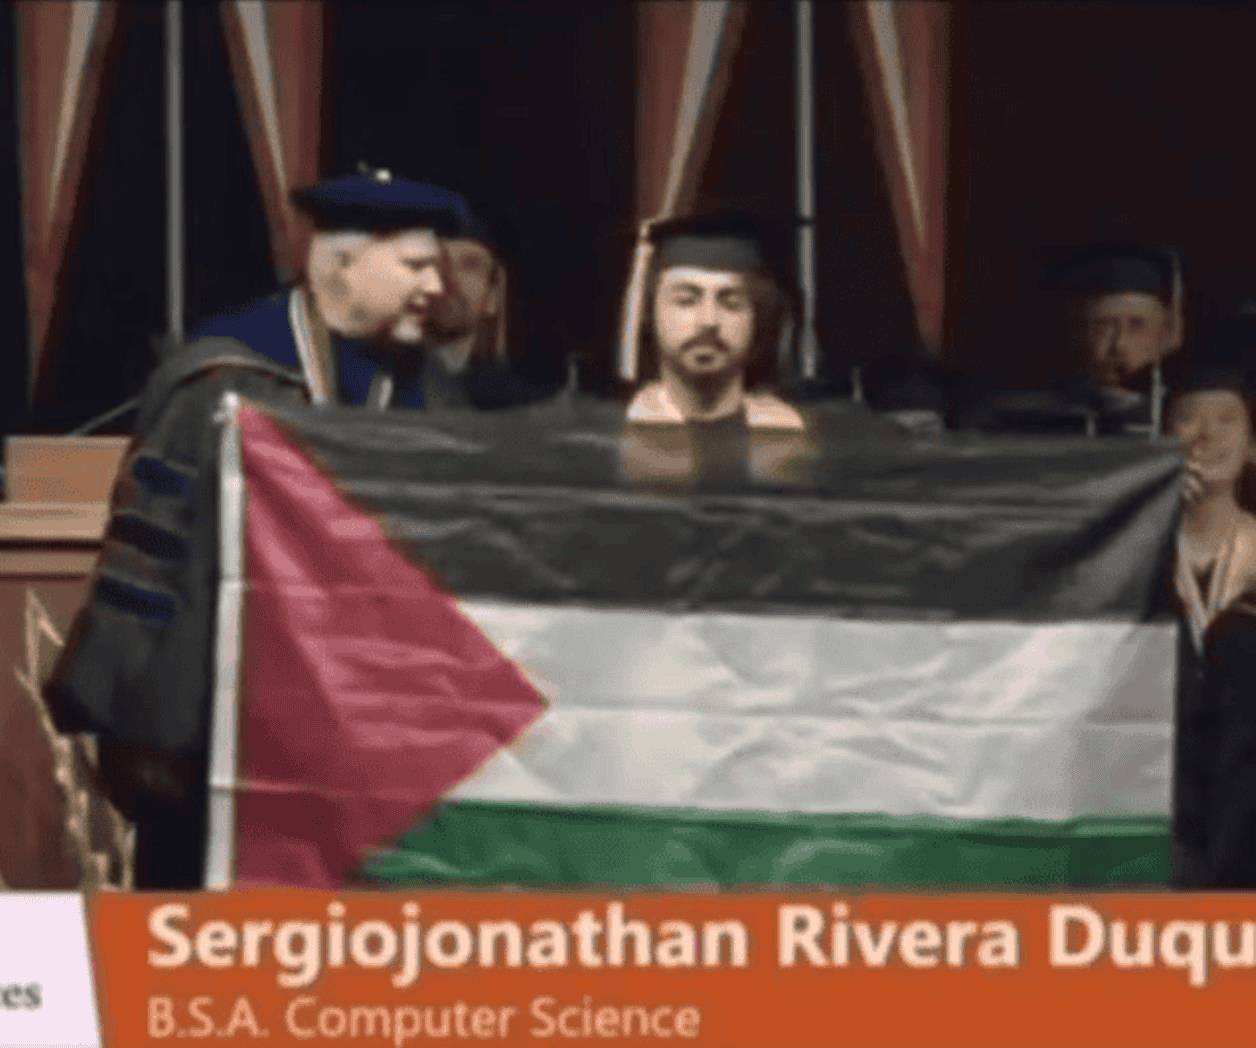 Alumno protesta con bandera de Palestina en graduación